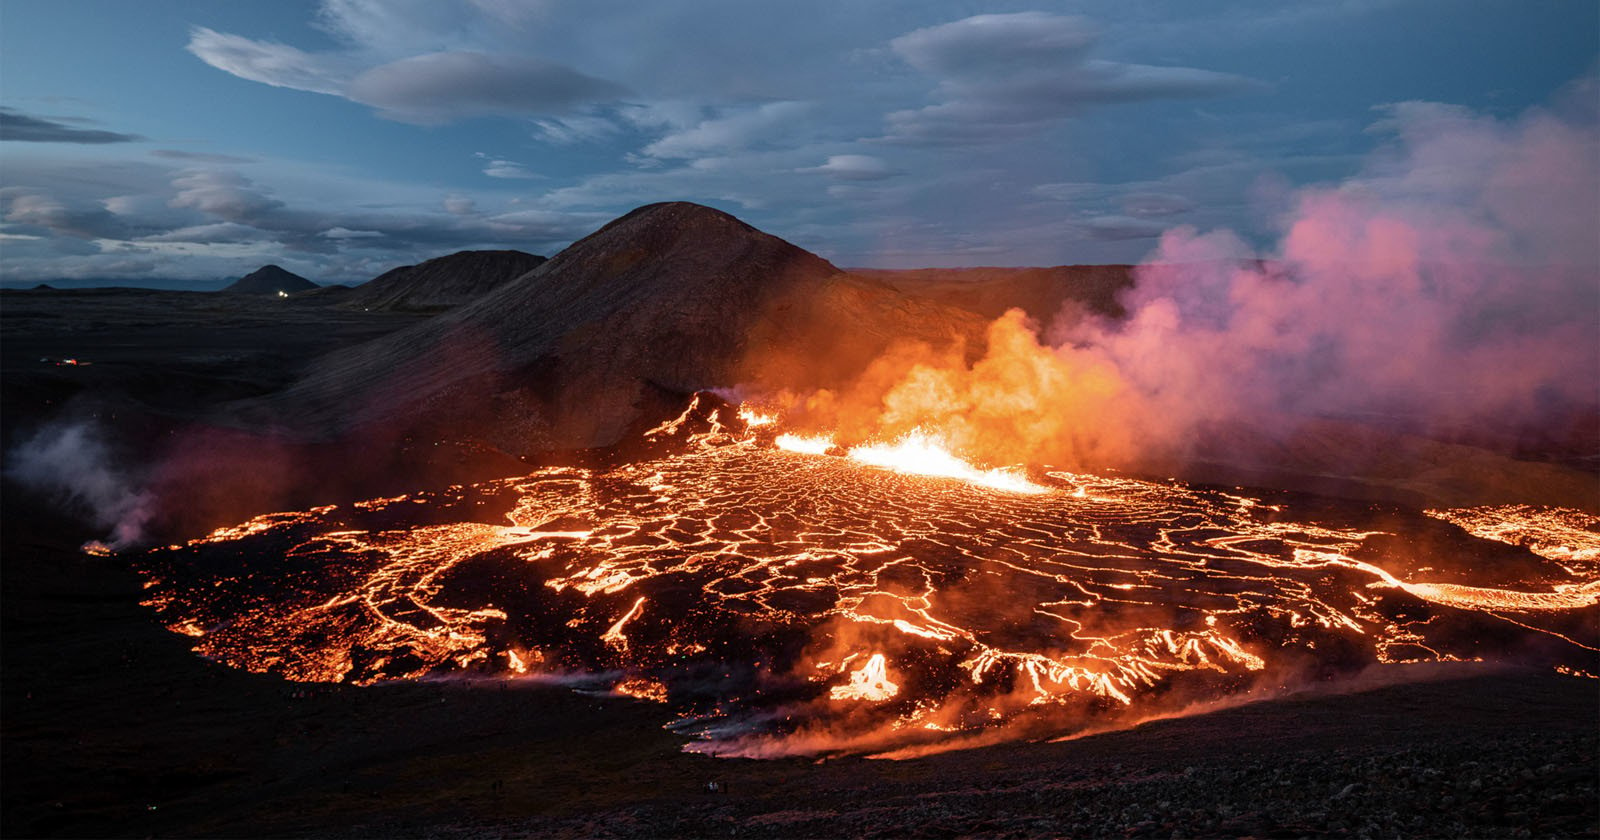 How Chris Burkard Shot Icelands Latest Volcanic Eruption for NatGeo